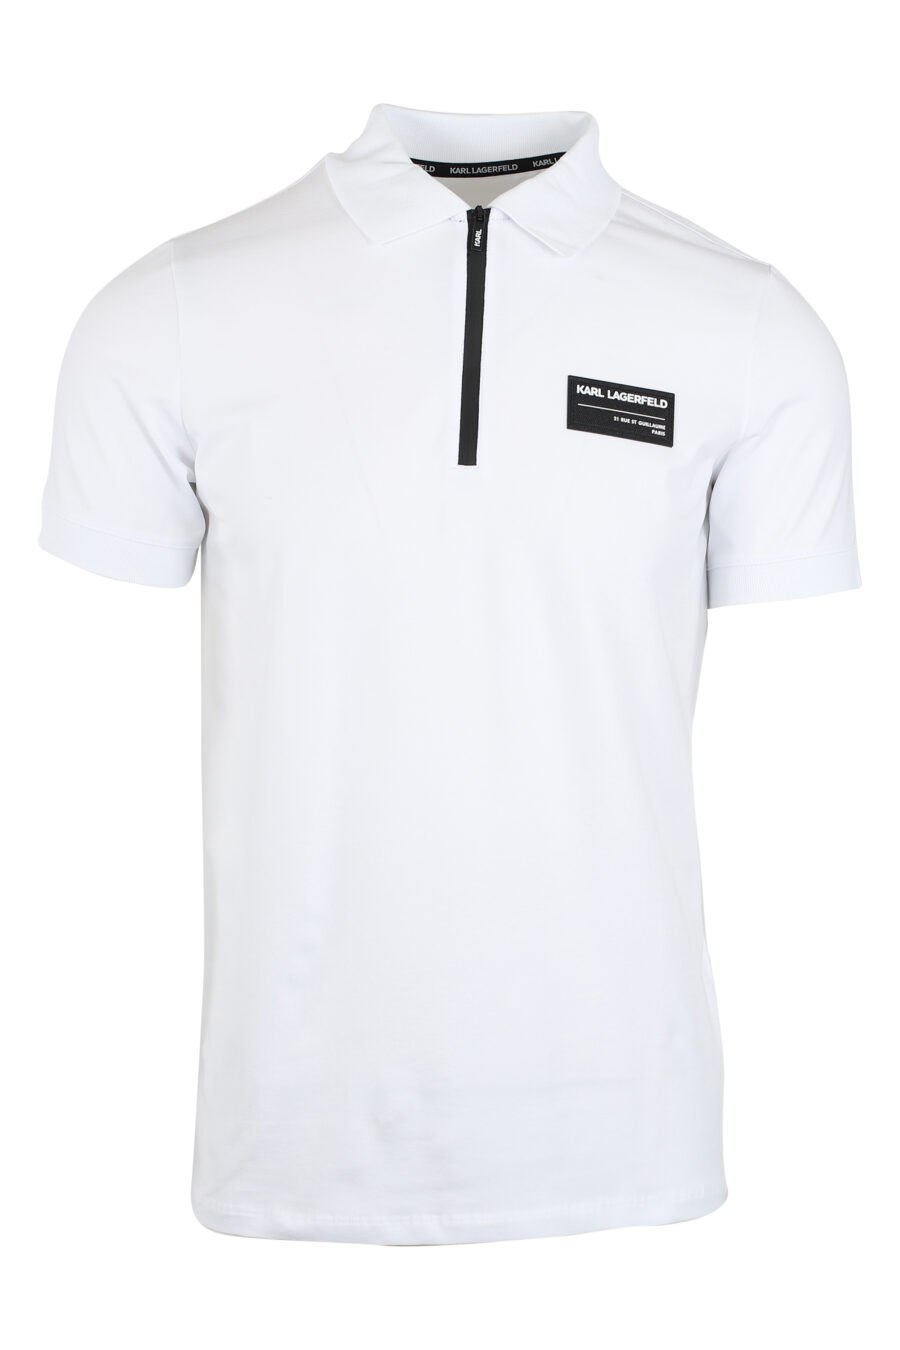 Weißes Poloshirt mit Reißverschluss und weißem Logoaufnäher - IMG 9494